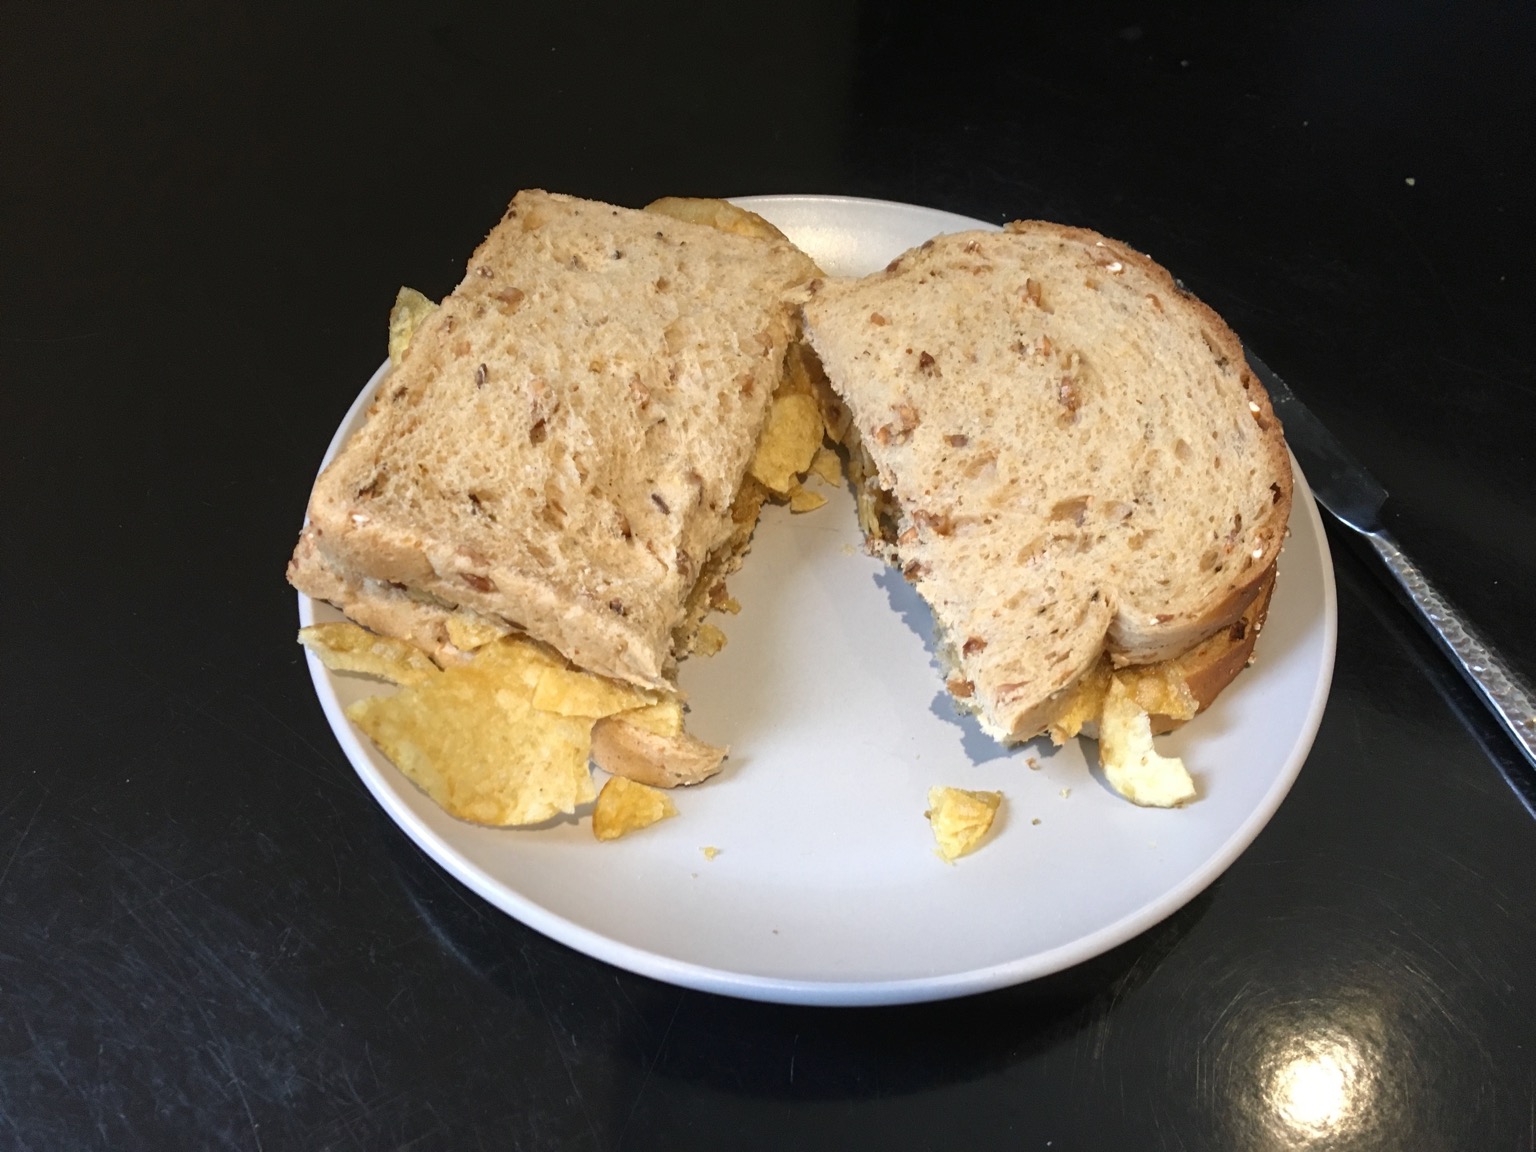 Brown crisp sandwich cut in half